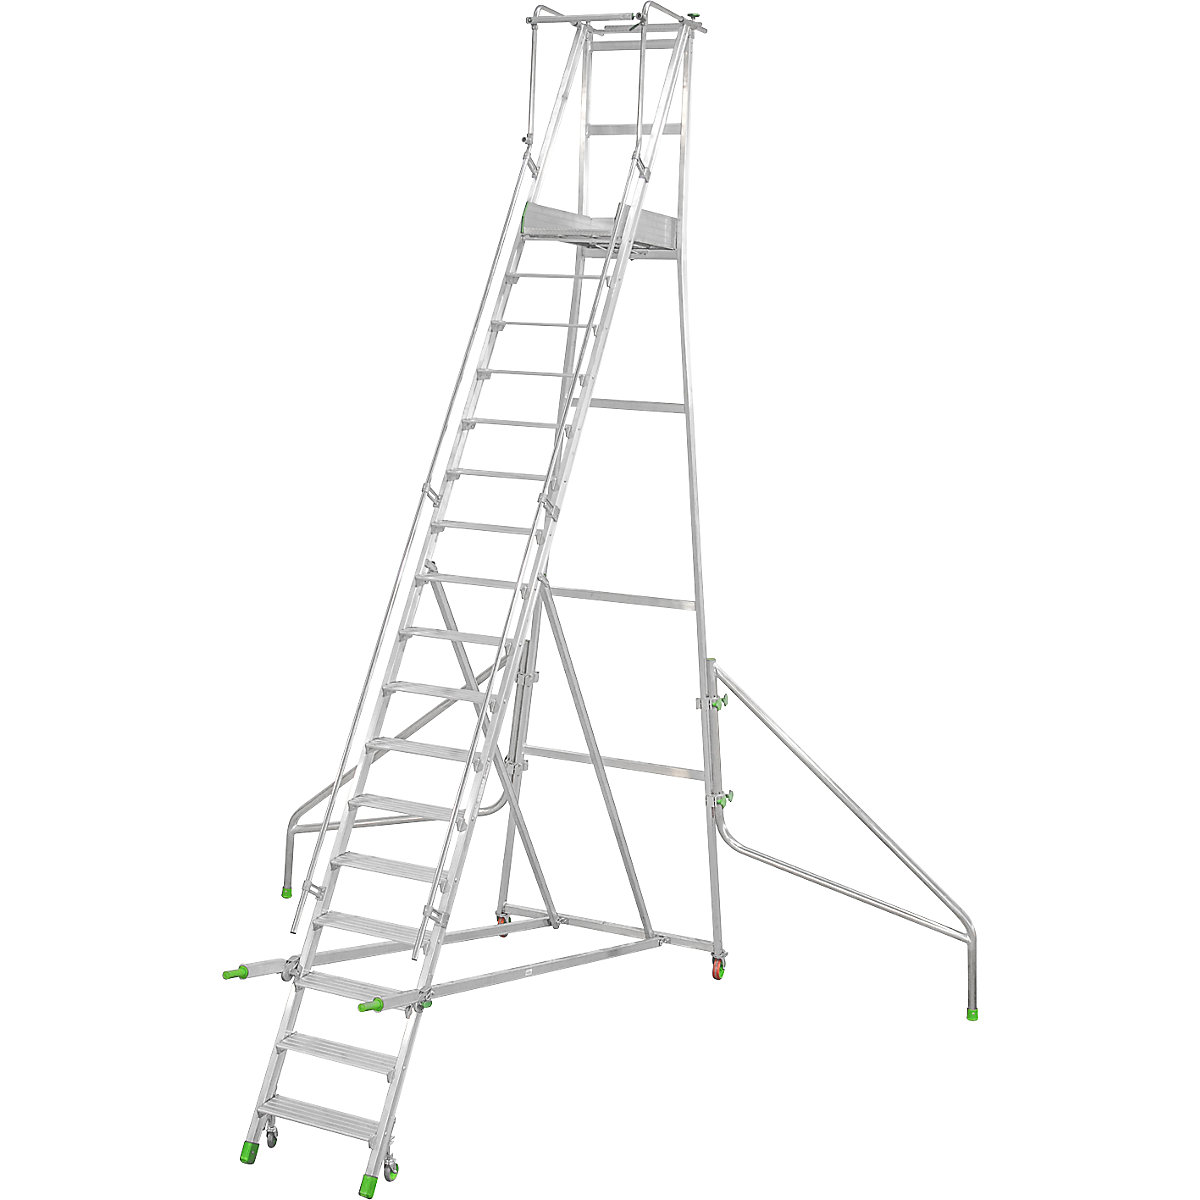 Mobile Alu-Podesttreppe, klappbar, mit gerieften Aluminiumstufen, 17 Stufen inkl. Plattform